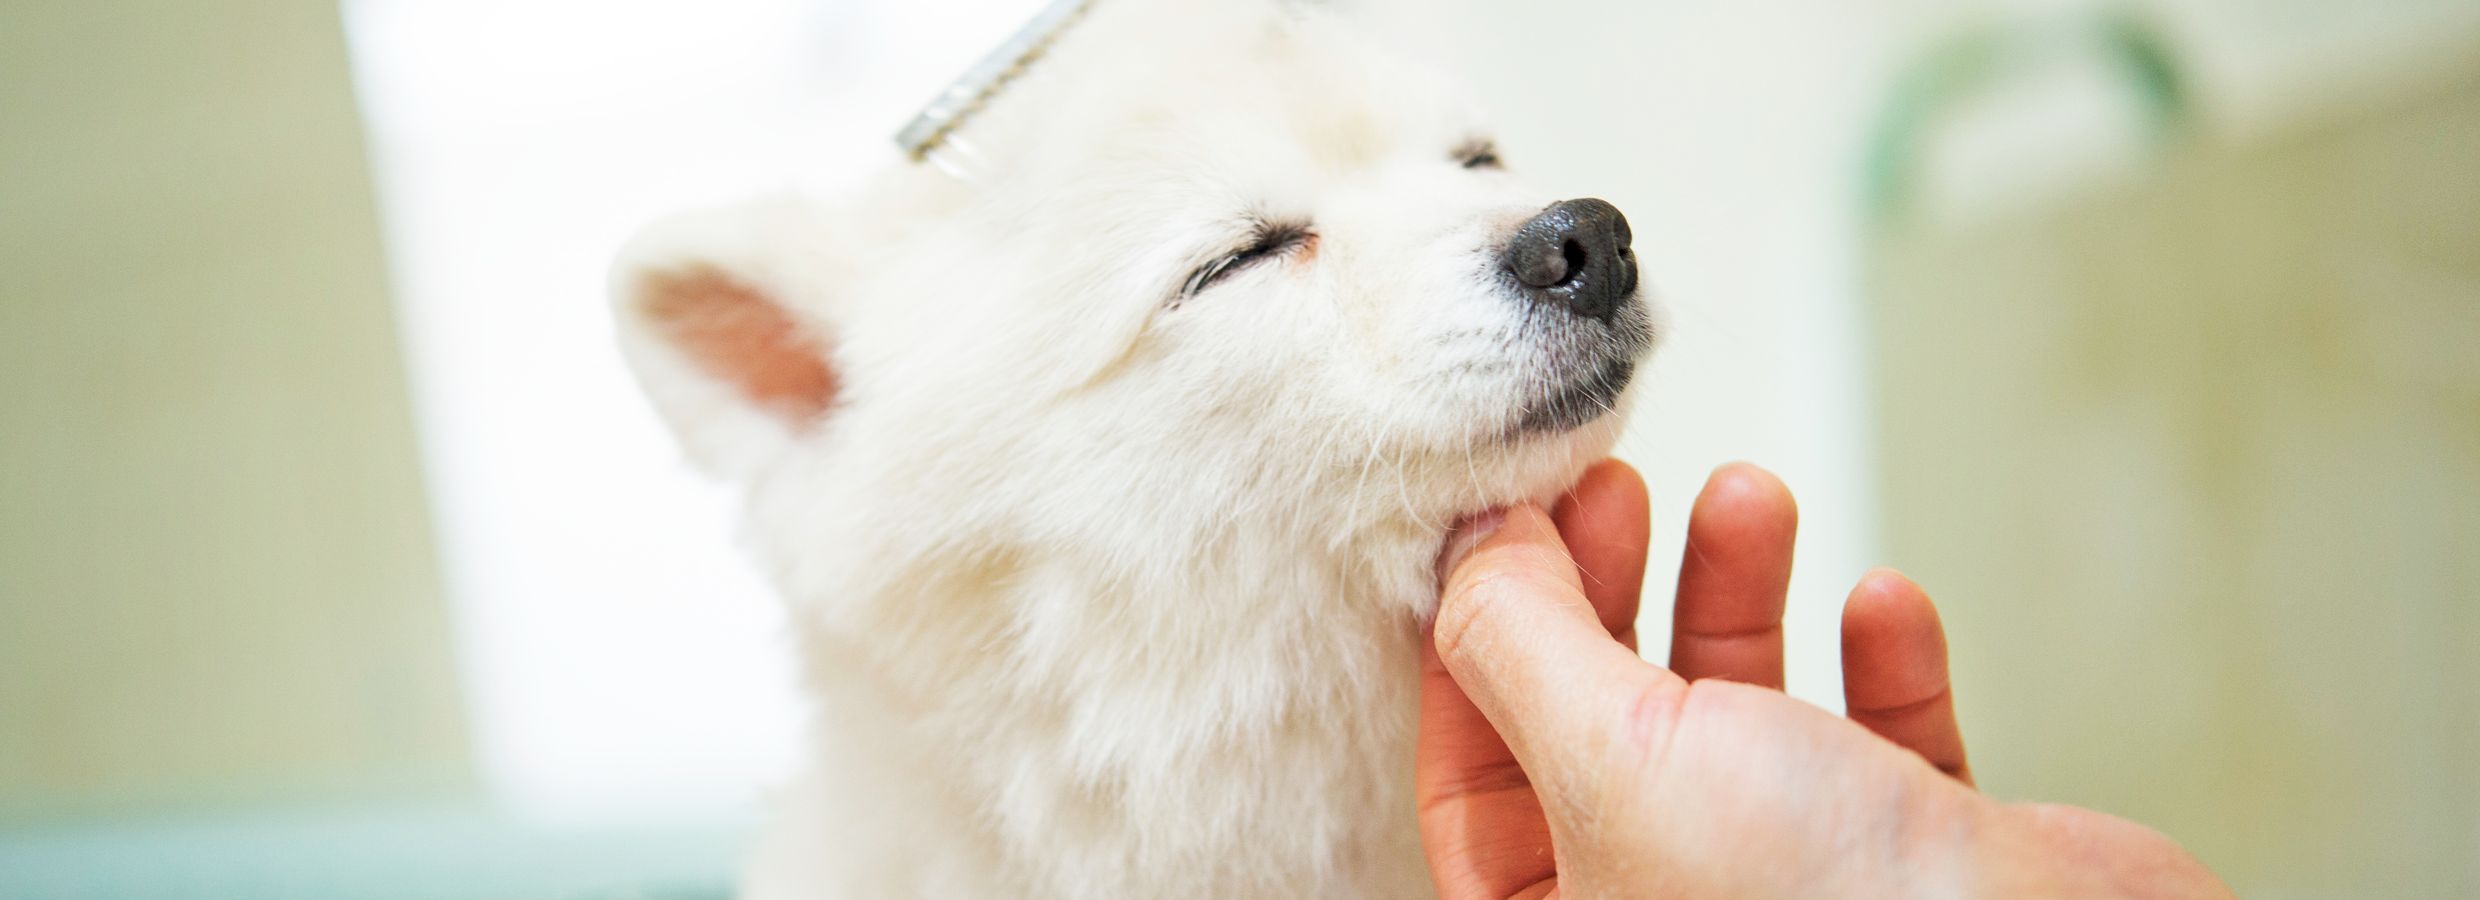 cost of dog nail trim at petsmart